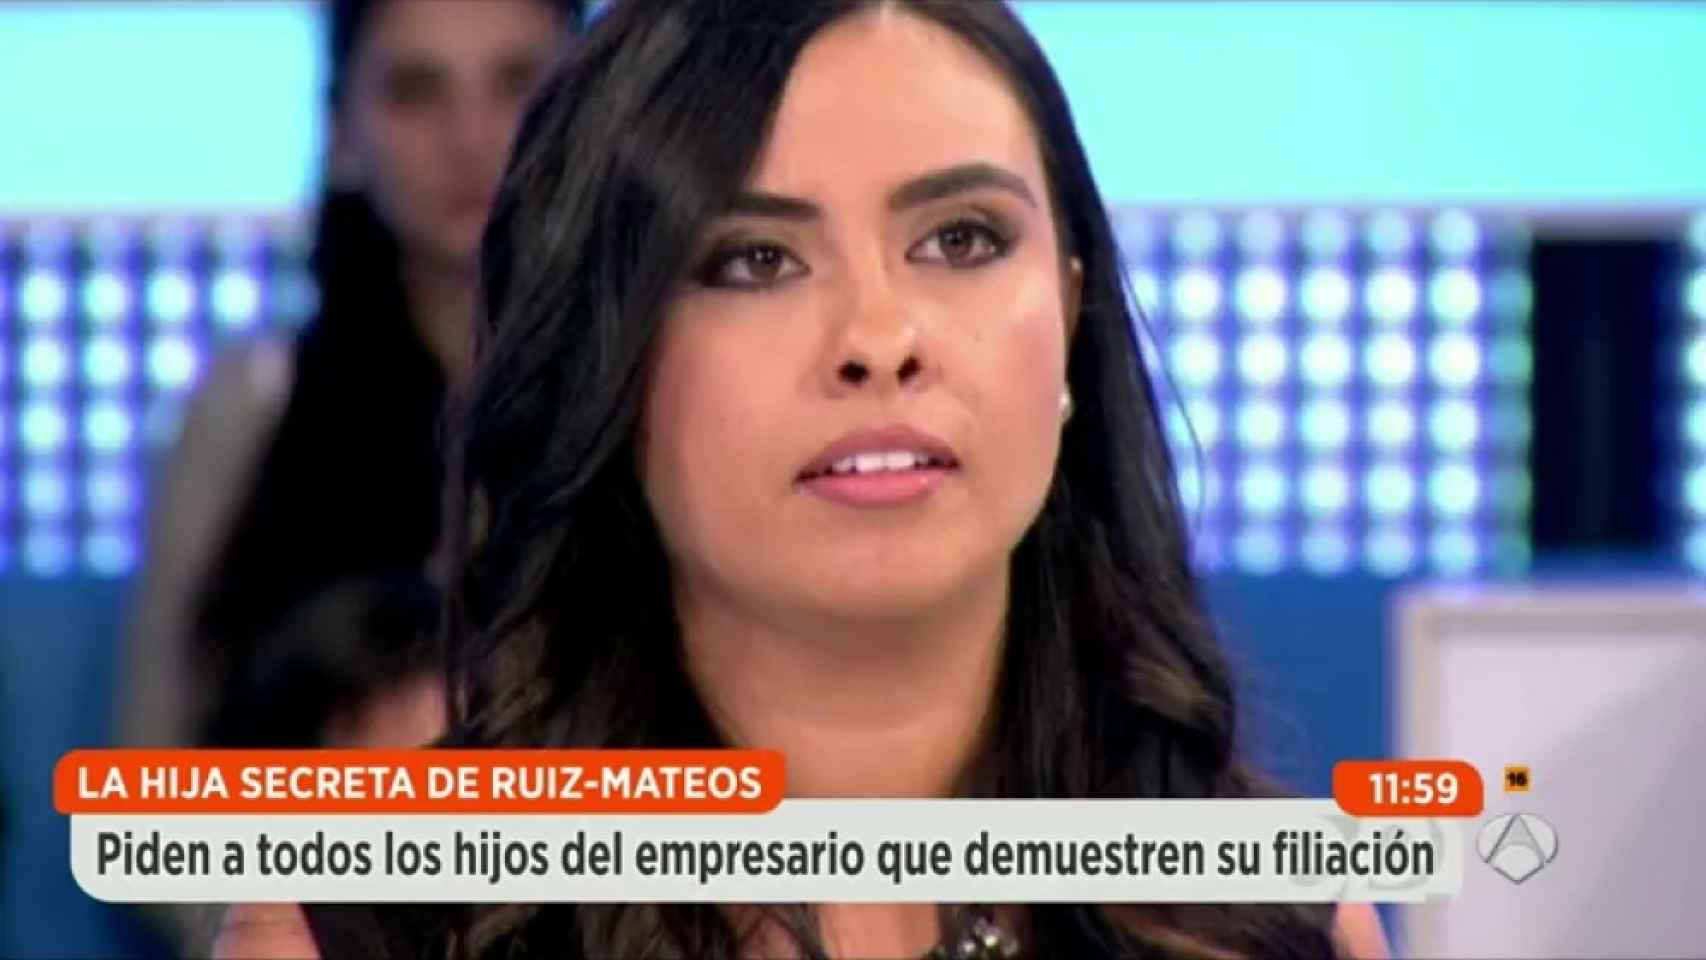 La hija secreta de Ruiz-Mateos en un programa de televisión.